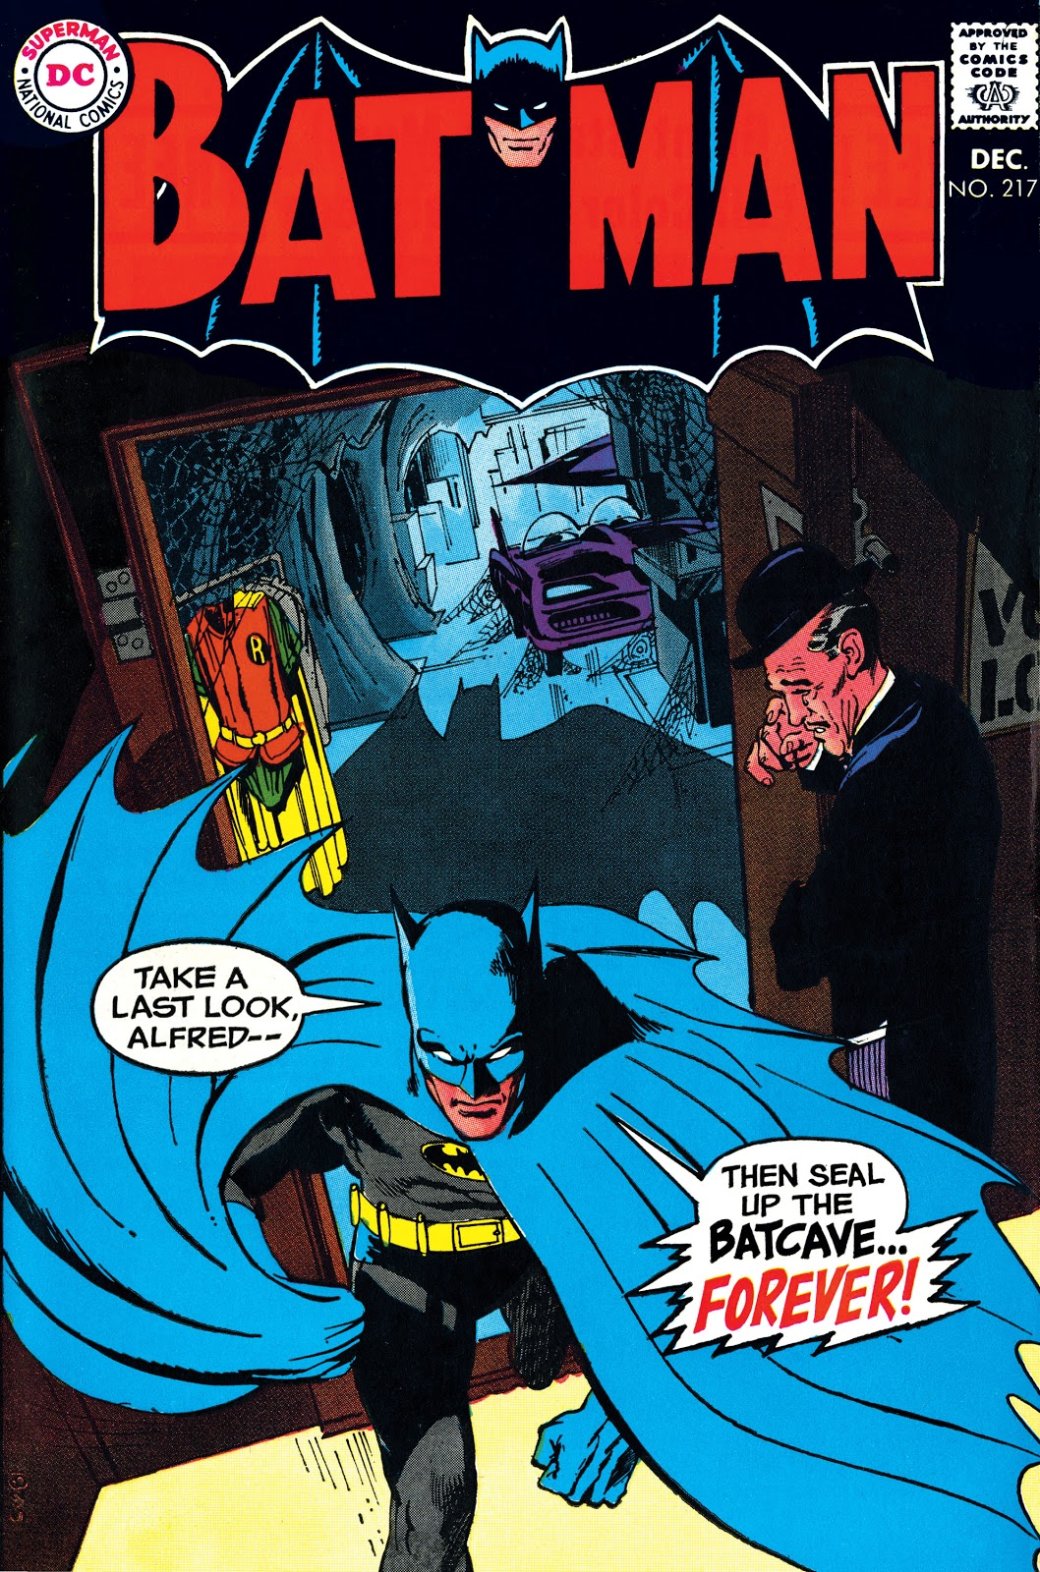 Галерея История Бэтмена в комиксах — вспоминаем путь Темного рыцаря в честь его юбилея - 4 фото